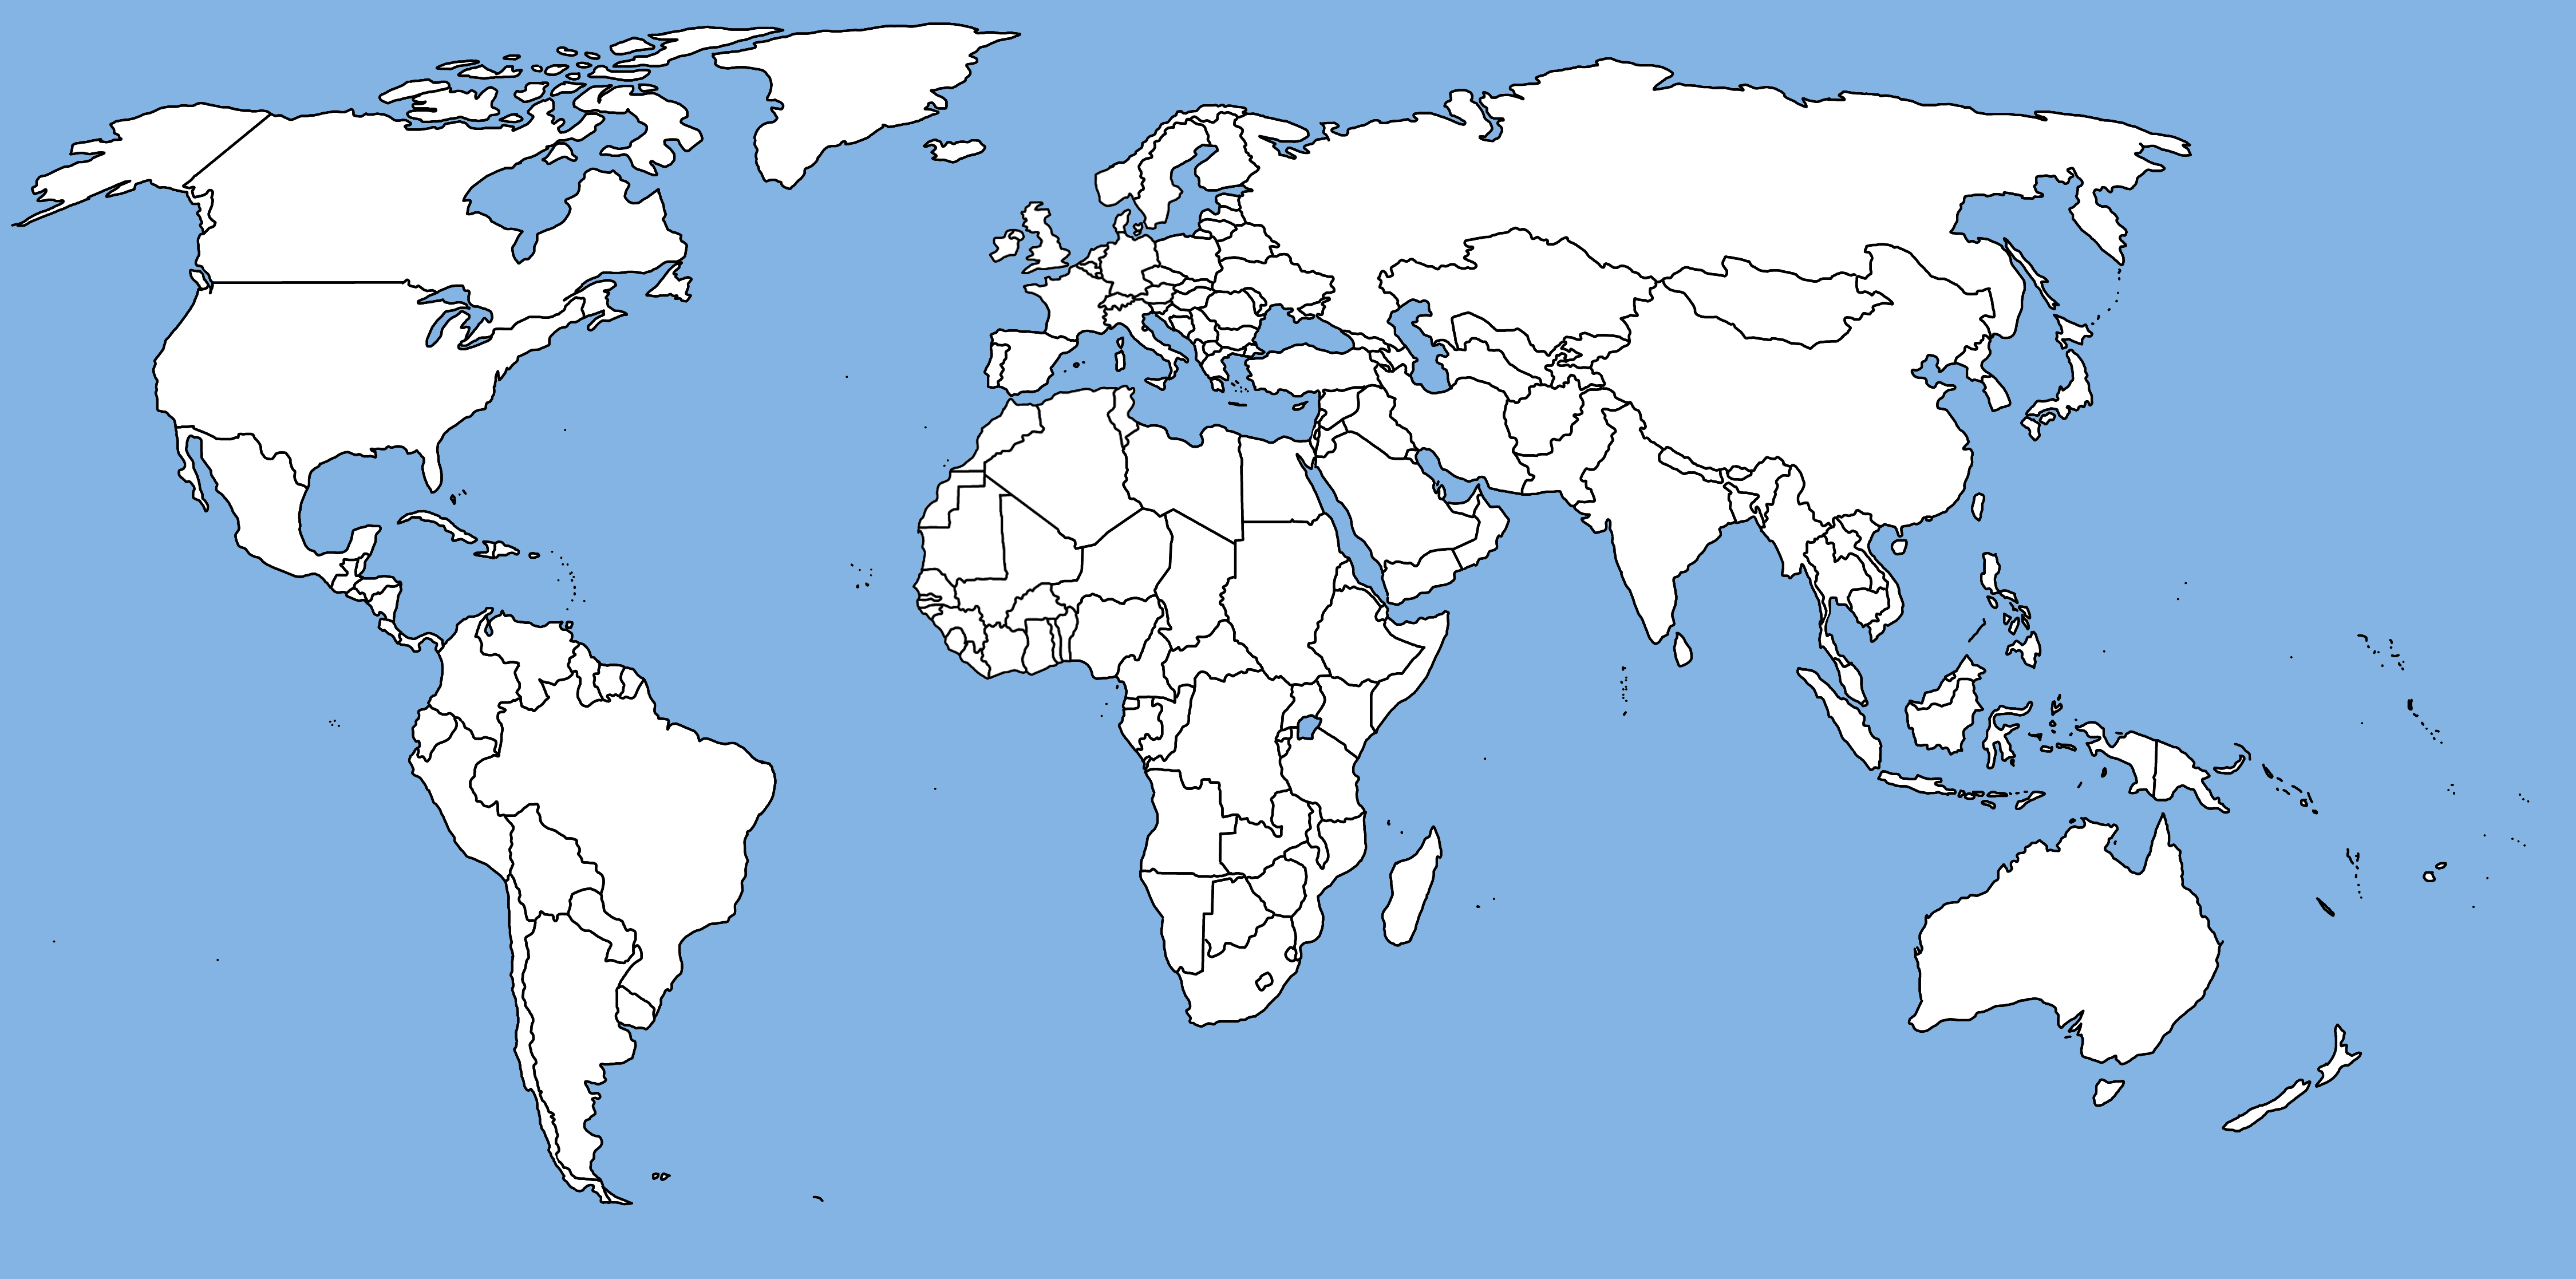 Dünya Ülkeler Sınırları Haritası